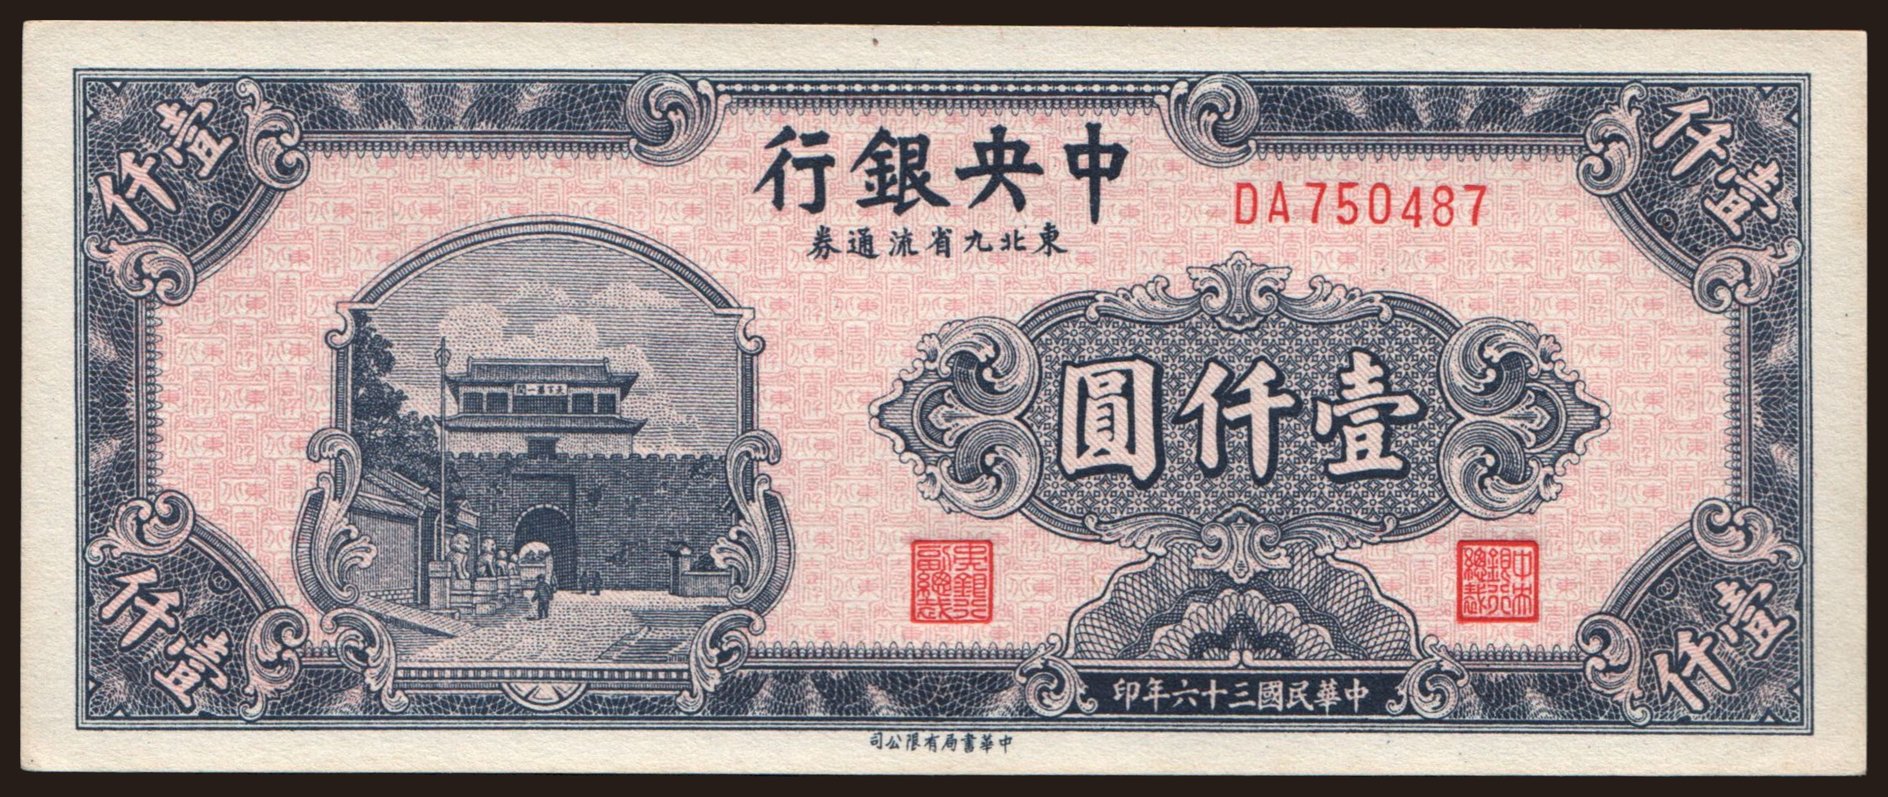 Central Bank of China, 1000 yuan, 1947